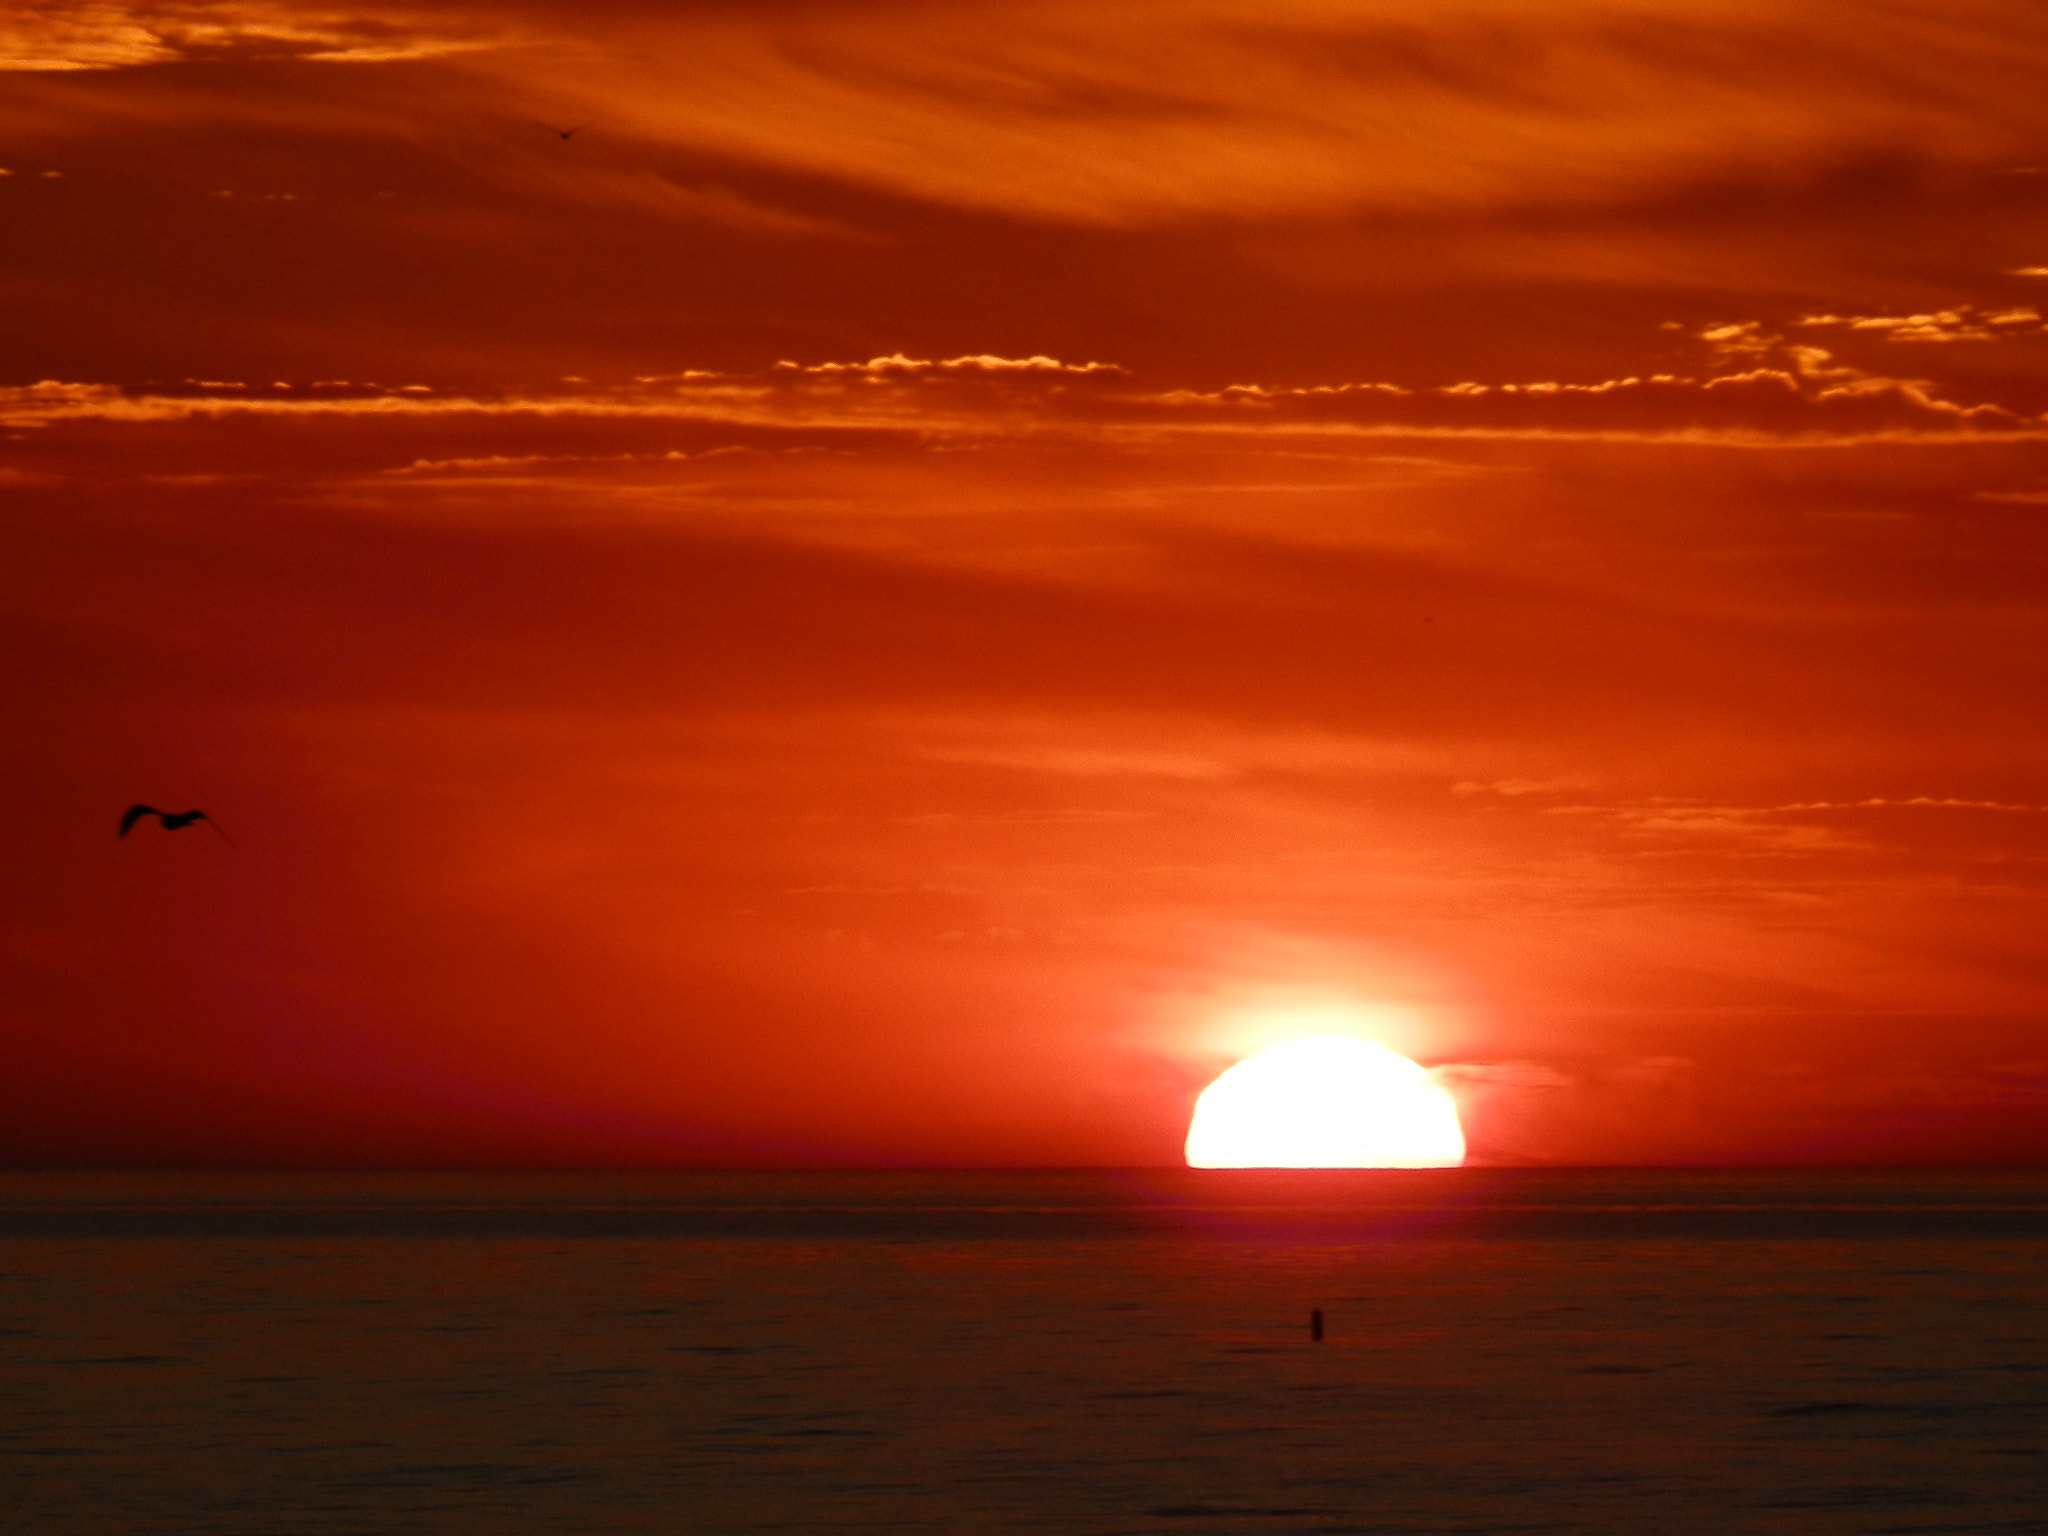 Olympus SP-610UZ sample photo. Bright orange sunrise photography